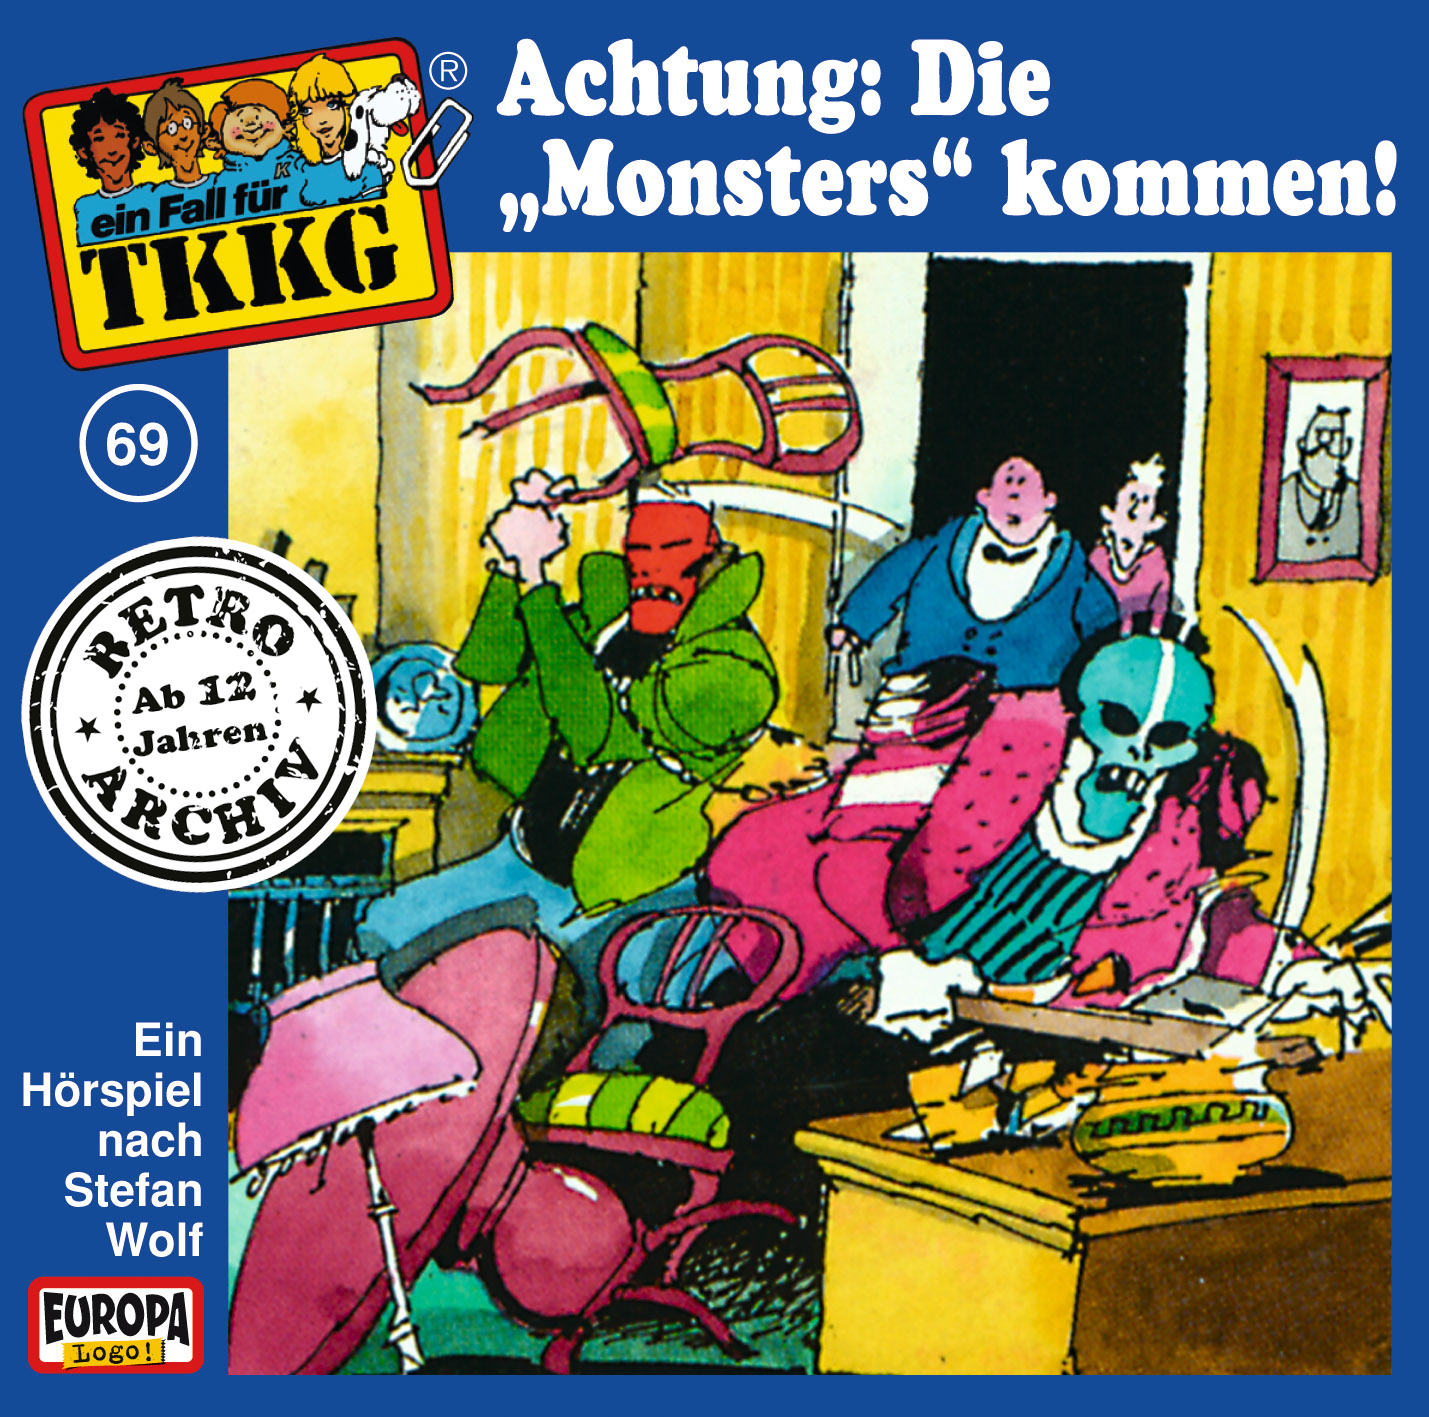 TKKG Retro-Archiv: Achtung: Die "Monsters" kommen!